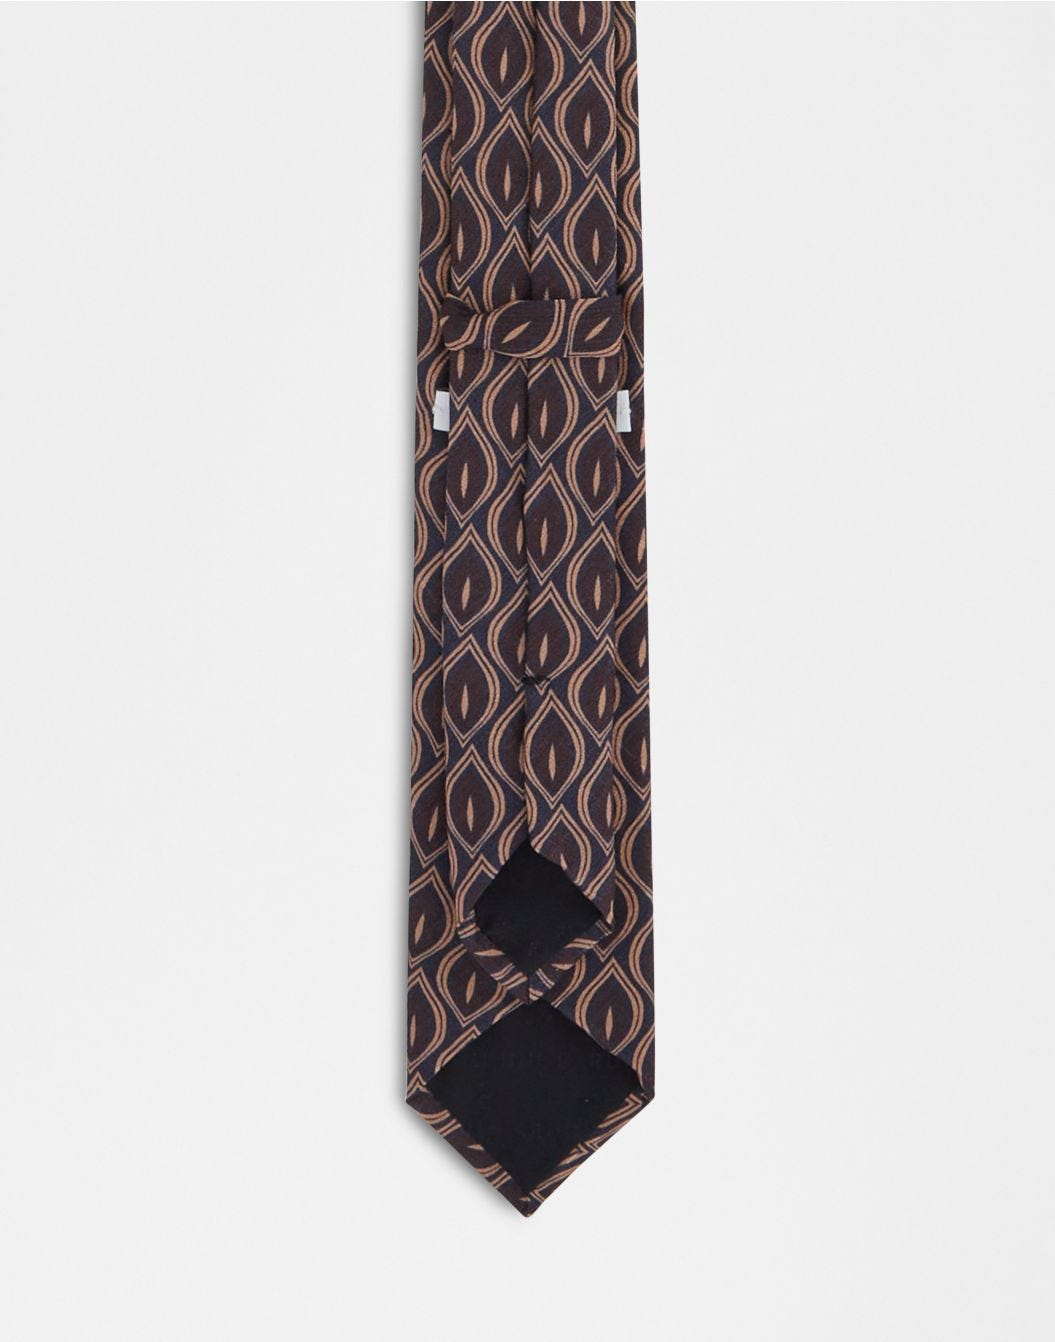 Cravatta in seta con stampa marrone, blu e beige